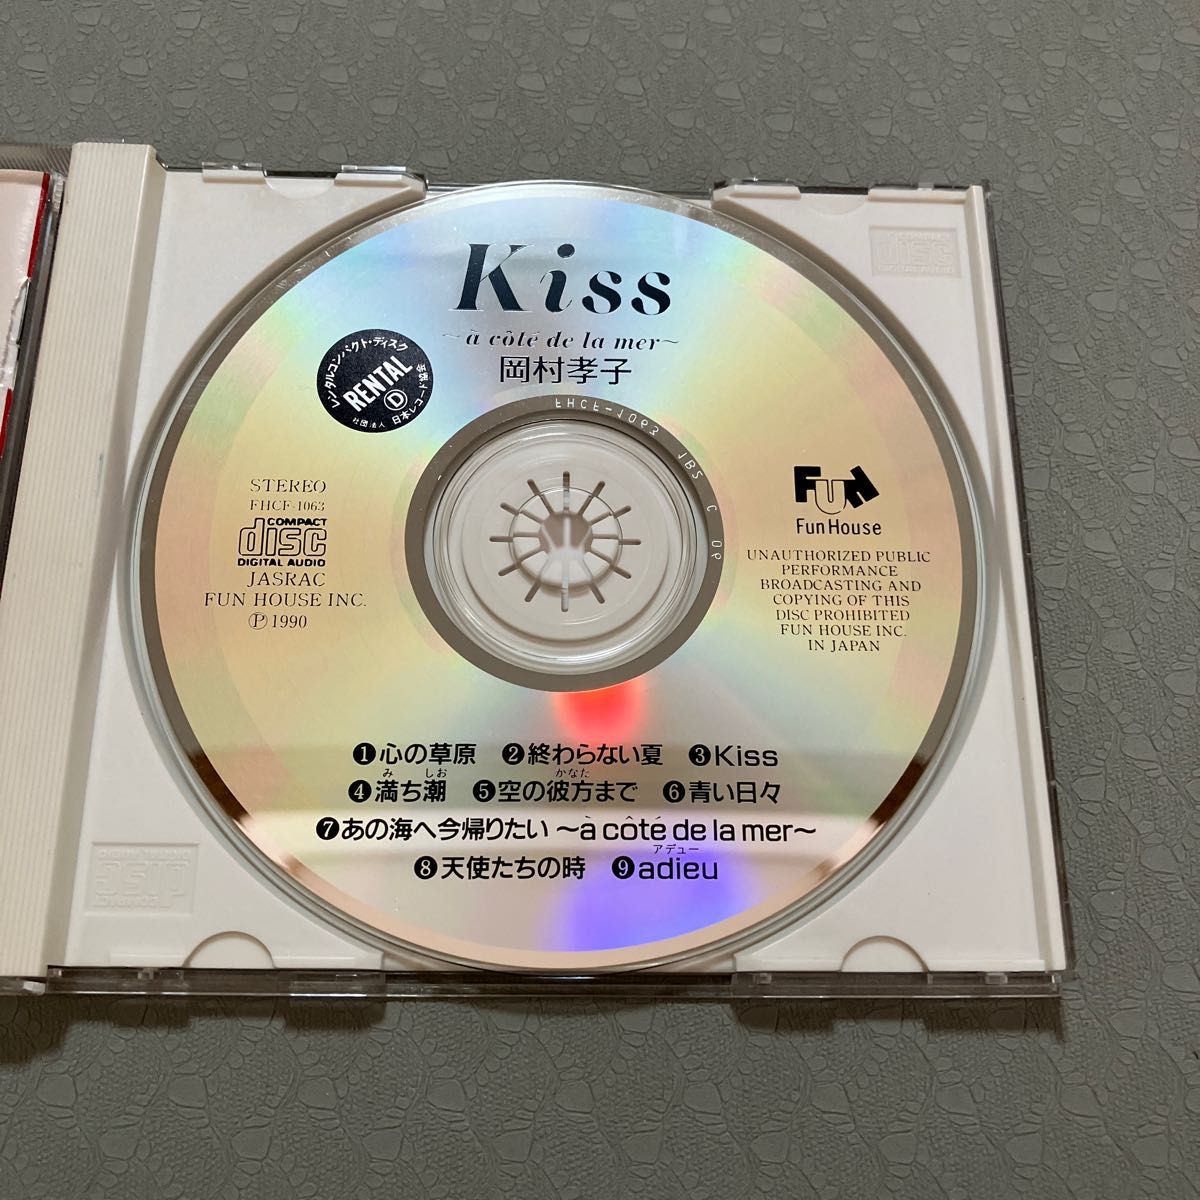 Kiss 岡村孝子